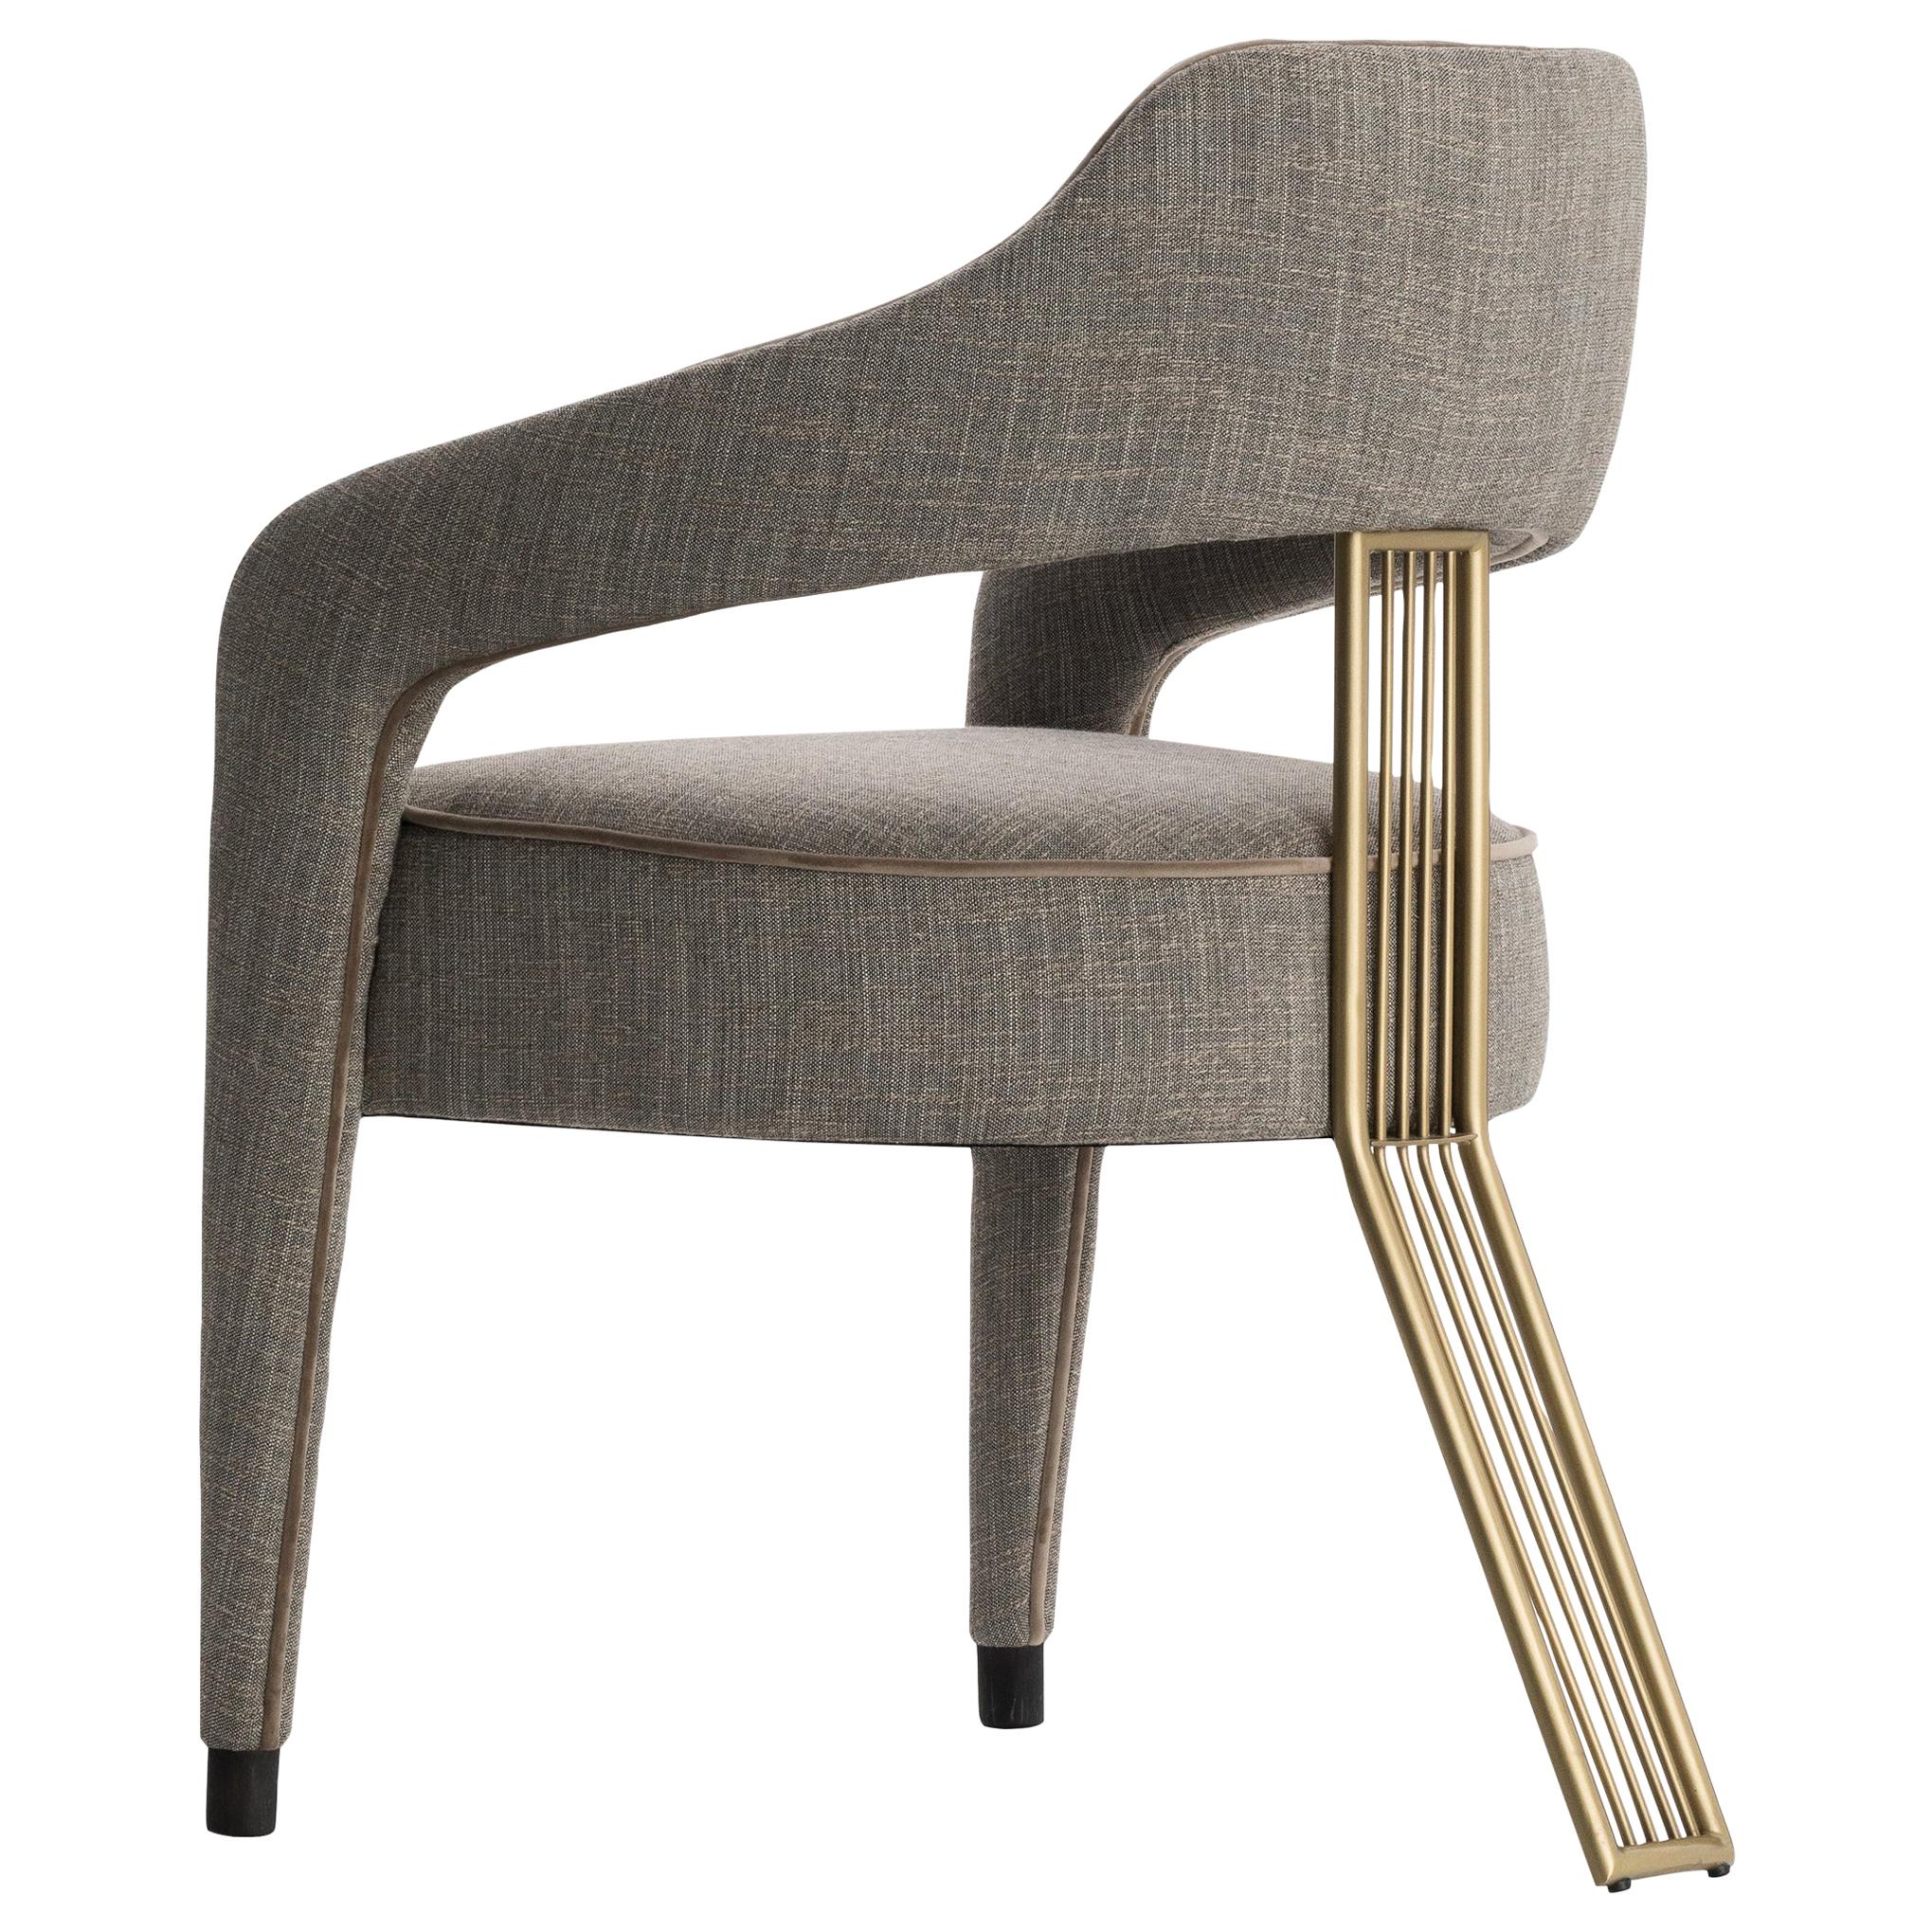 La chaise de salle à manger Invicta II a un design exclusif et impressionnant, avec un seul pied à l'arrière, elle apporte de la sophistication à toutes les salles à manger. Elle est entièrement tapissée de tissu avec des passepoils contrastés qui